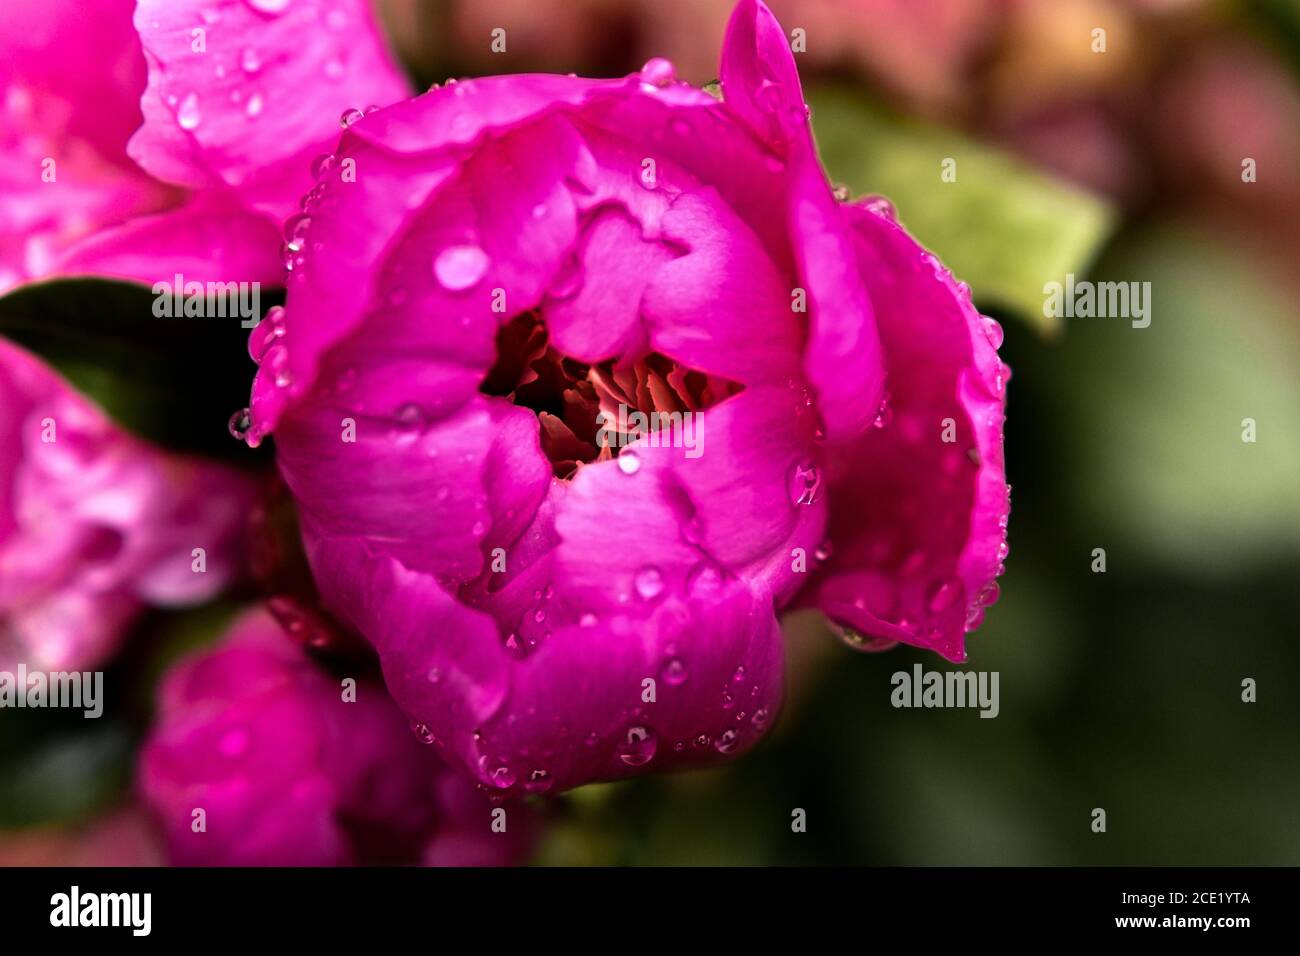 Pfingstrose aus der Nähe isoliert. Rosafarbene Pfingstrose im Garten nach Regen, Blütenblätter von Pfingstrosen mit Regentropfen. Pfingstrose Blume Hintergrund. Stockfoto